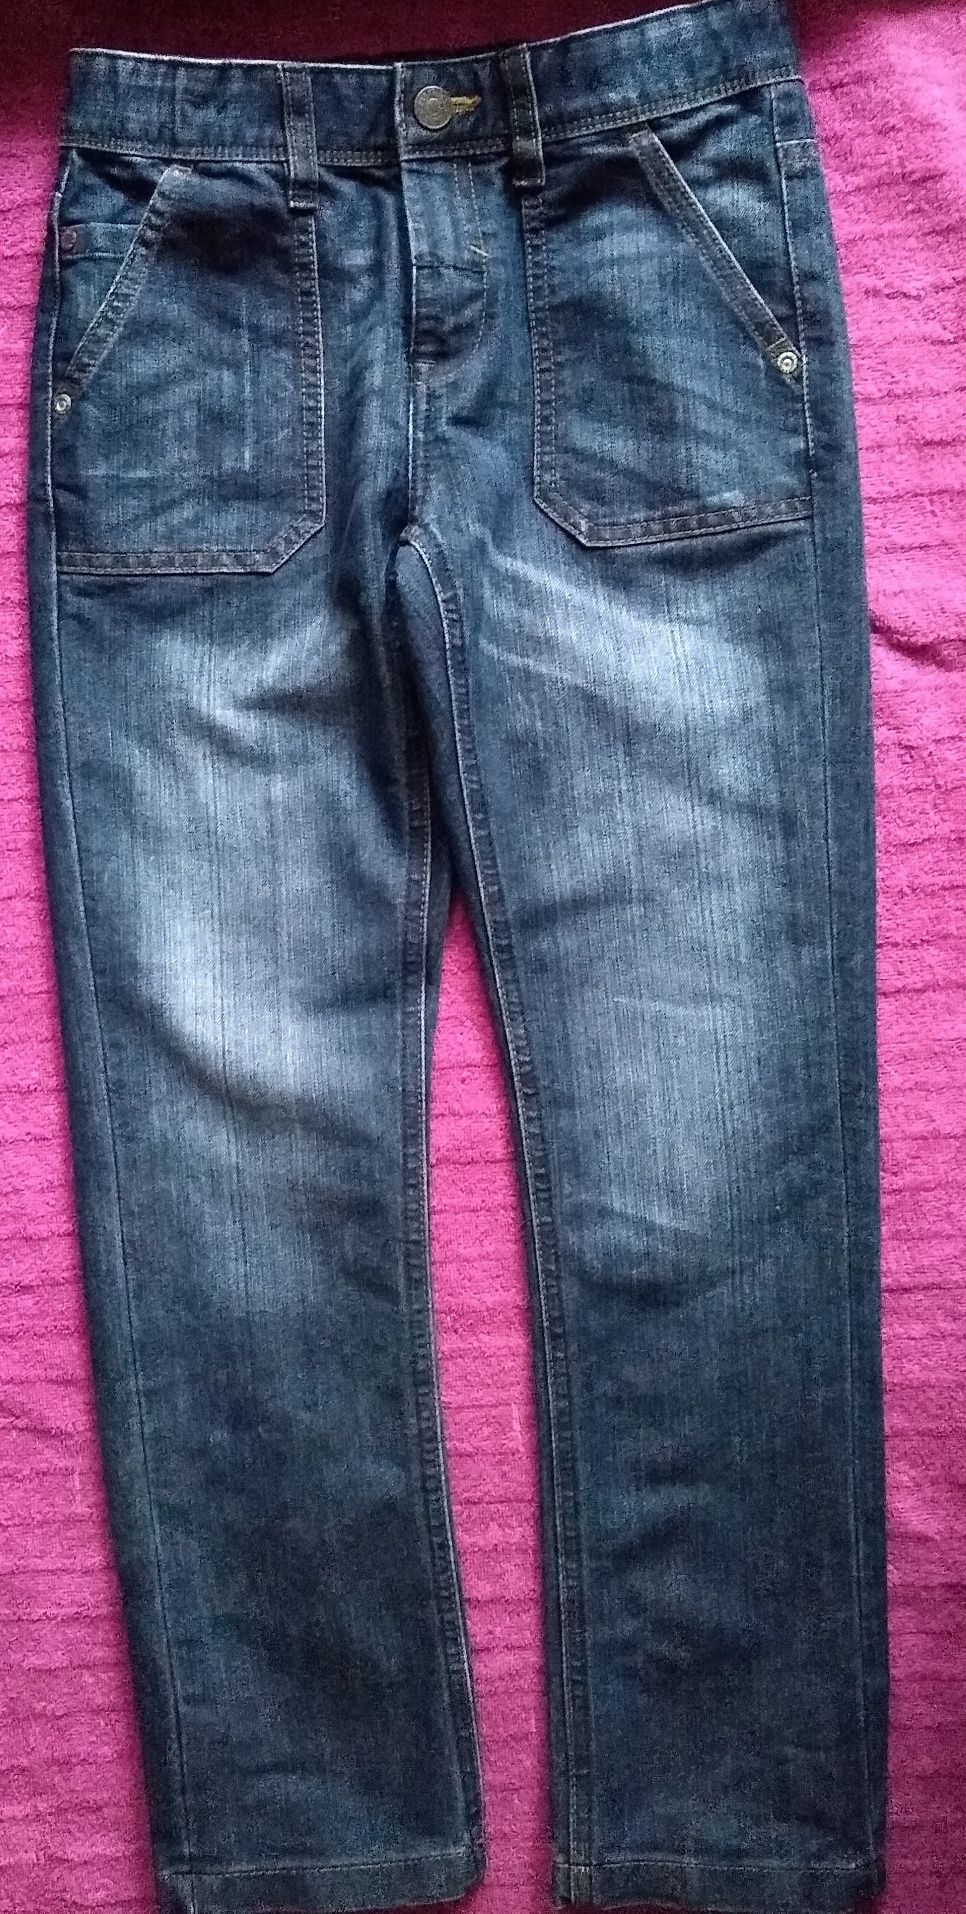 spodnie jeansowe 134